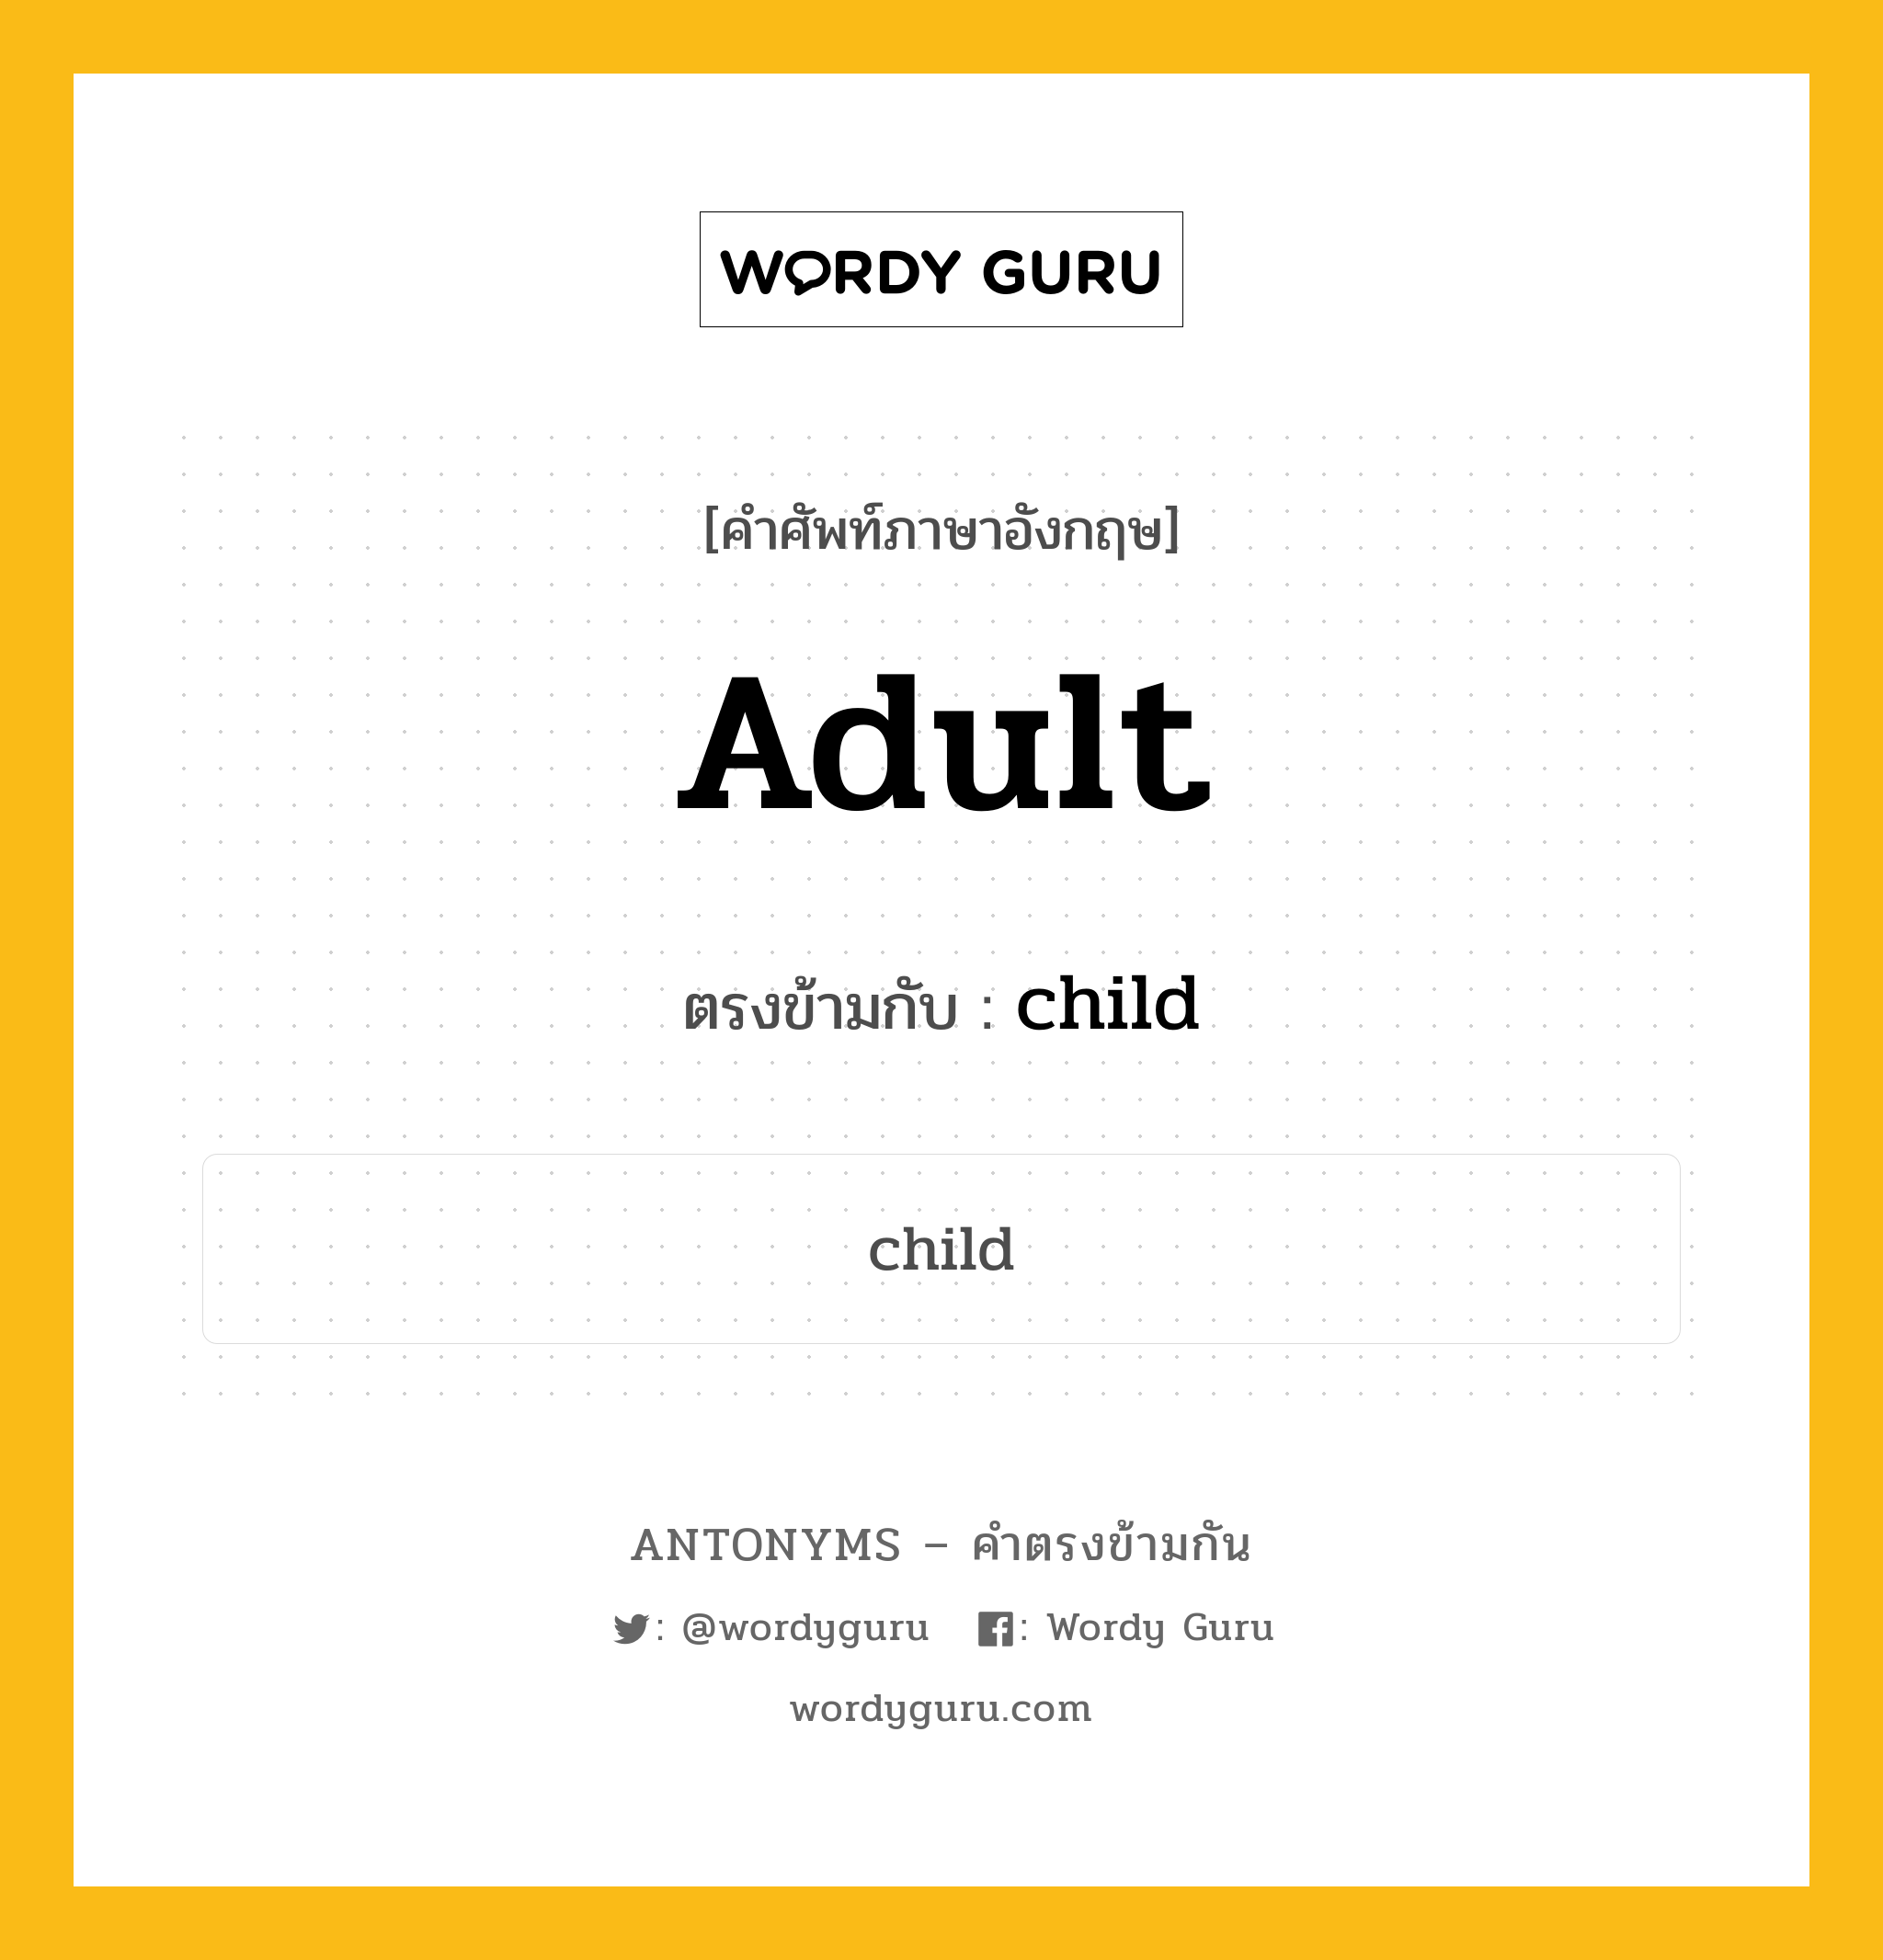 adult เป็นคำตรงข้ามกับคำไหนบ้าง?, คำศัพท์ภาษาอังกฤษ adult ตรงข้ามกับ child หมวด child